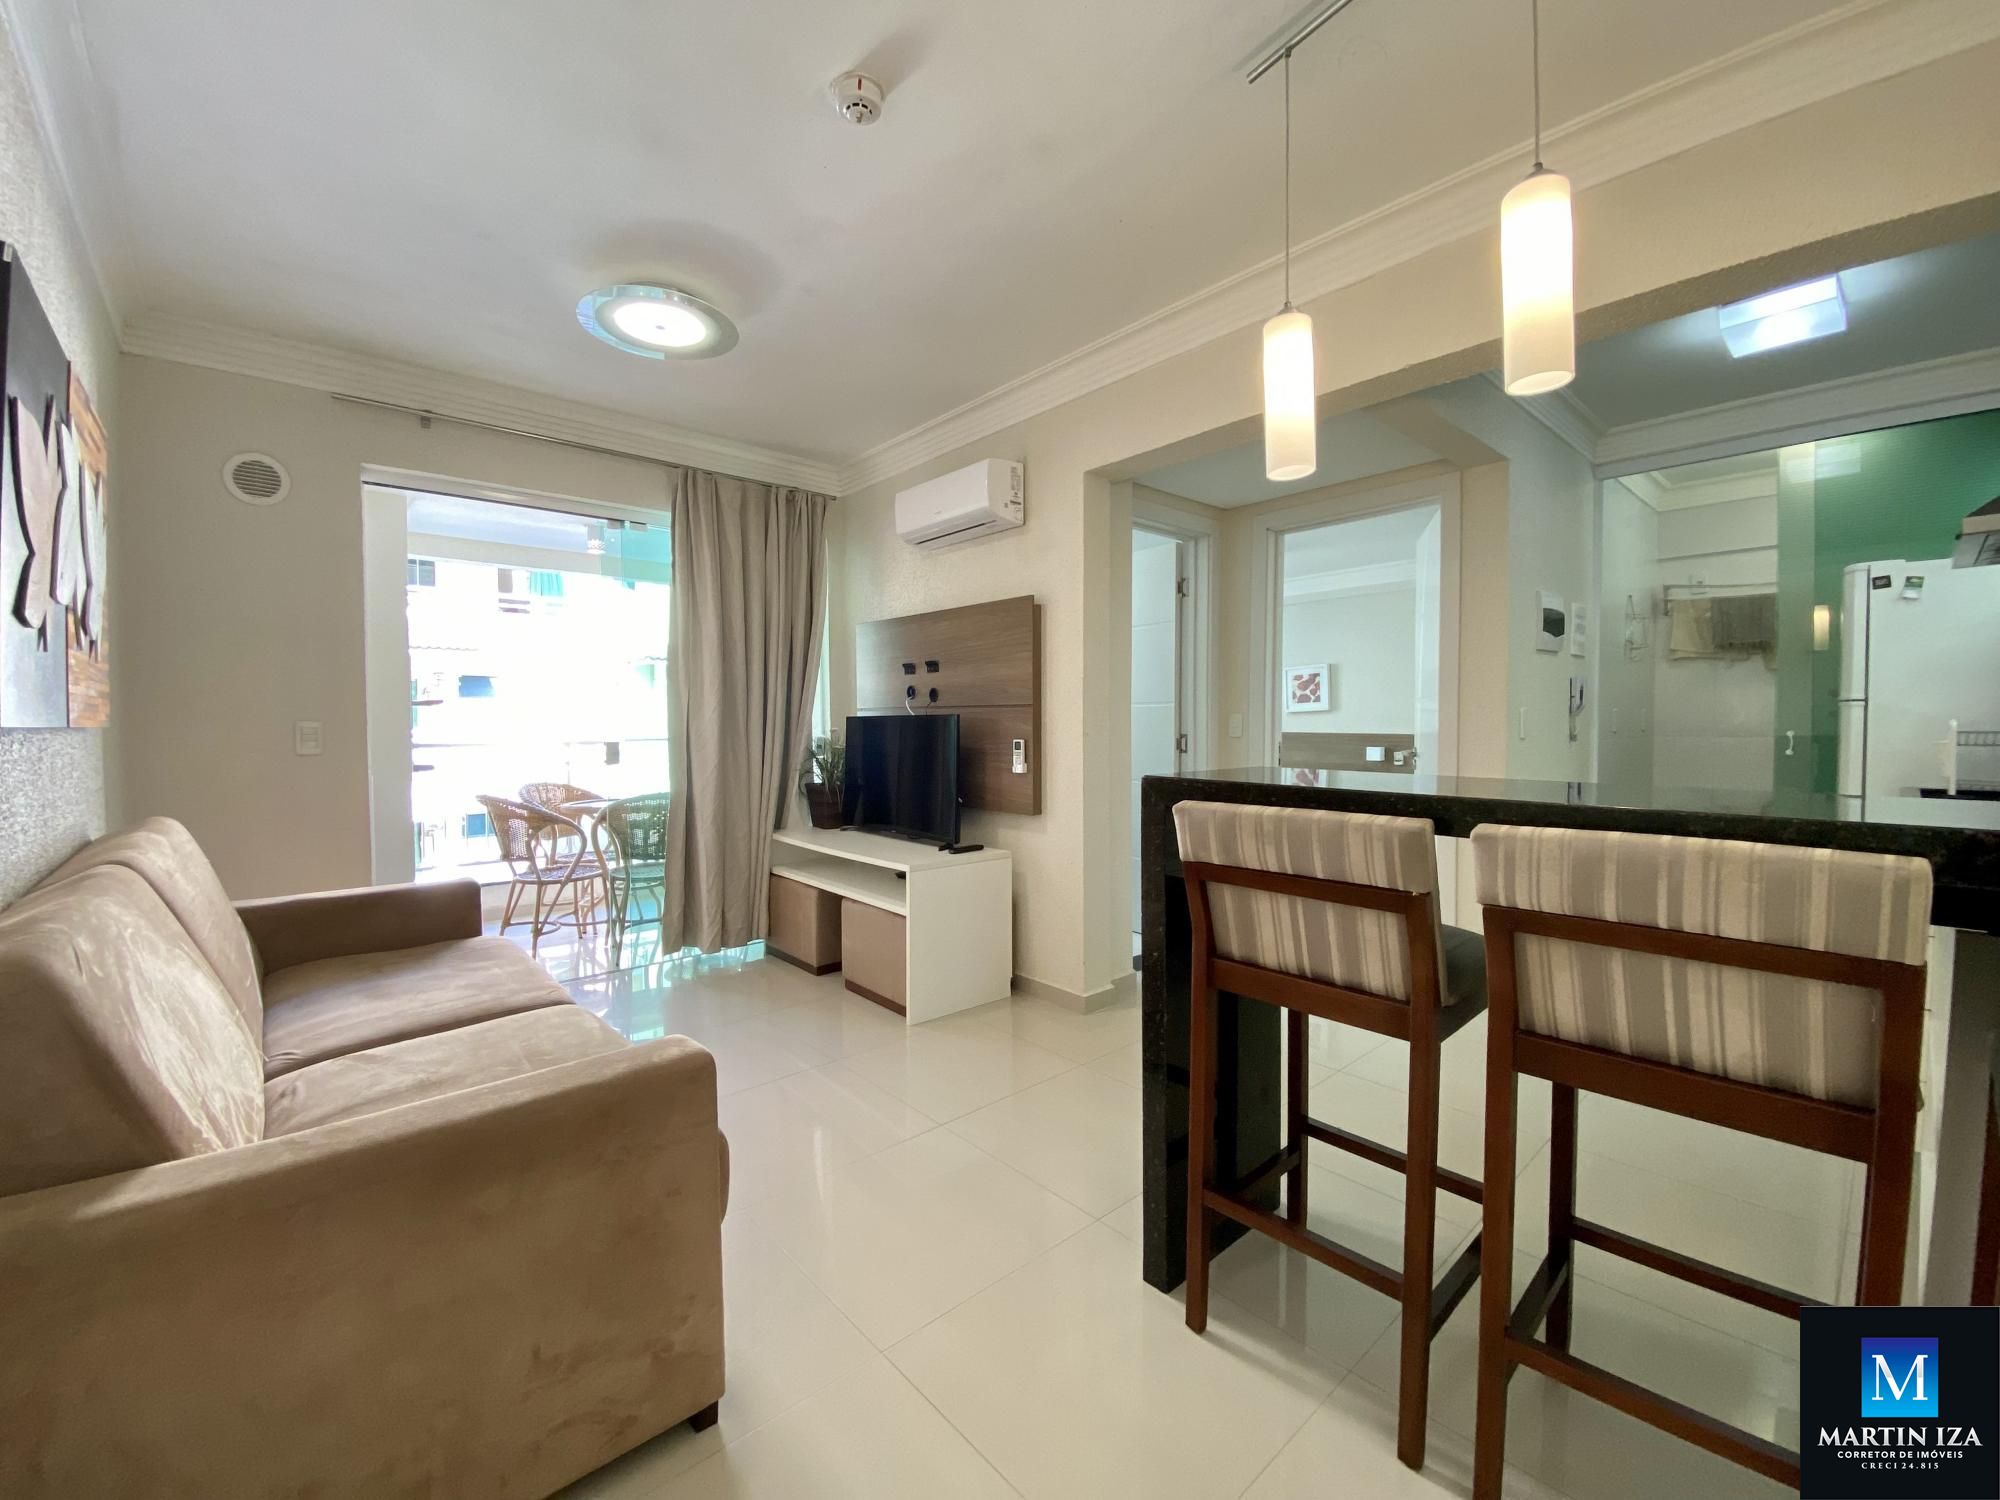 Apartamento com 1 Dormitórios para alugar, 46 m² por R$ 300,00